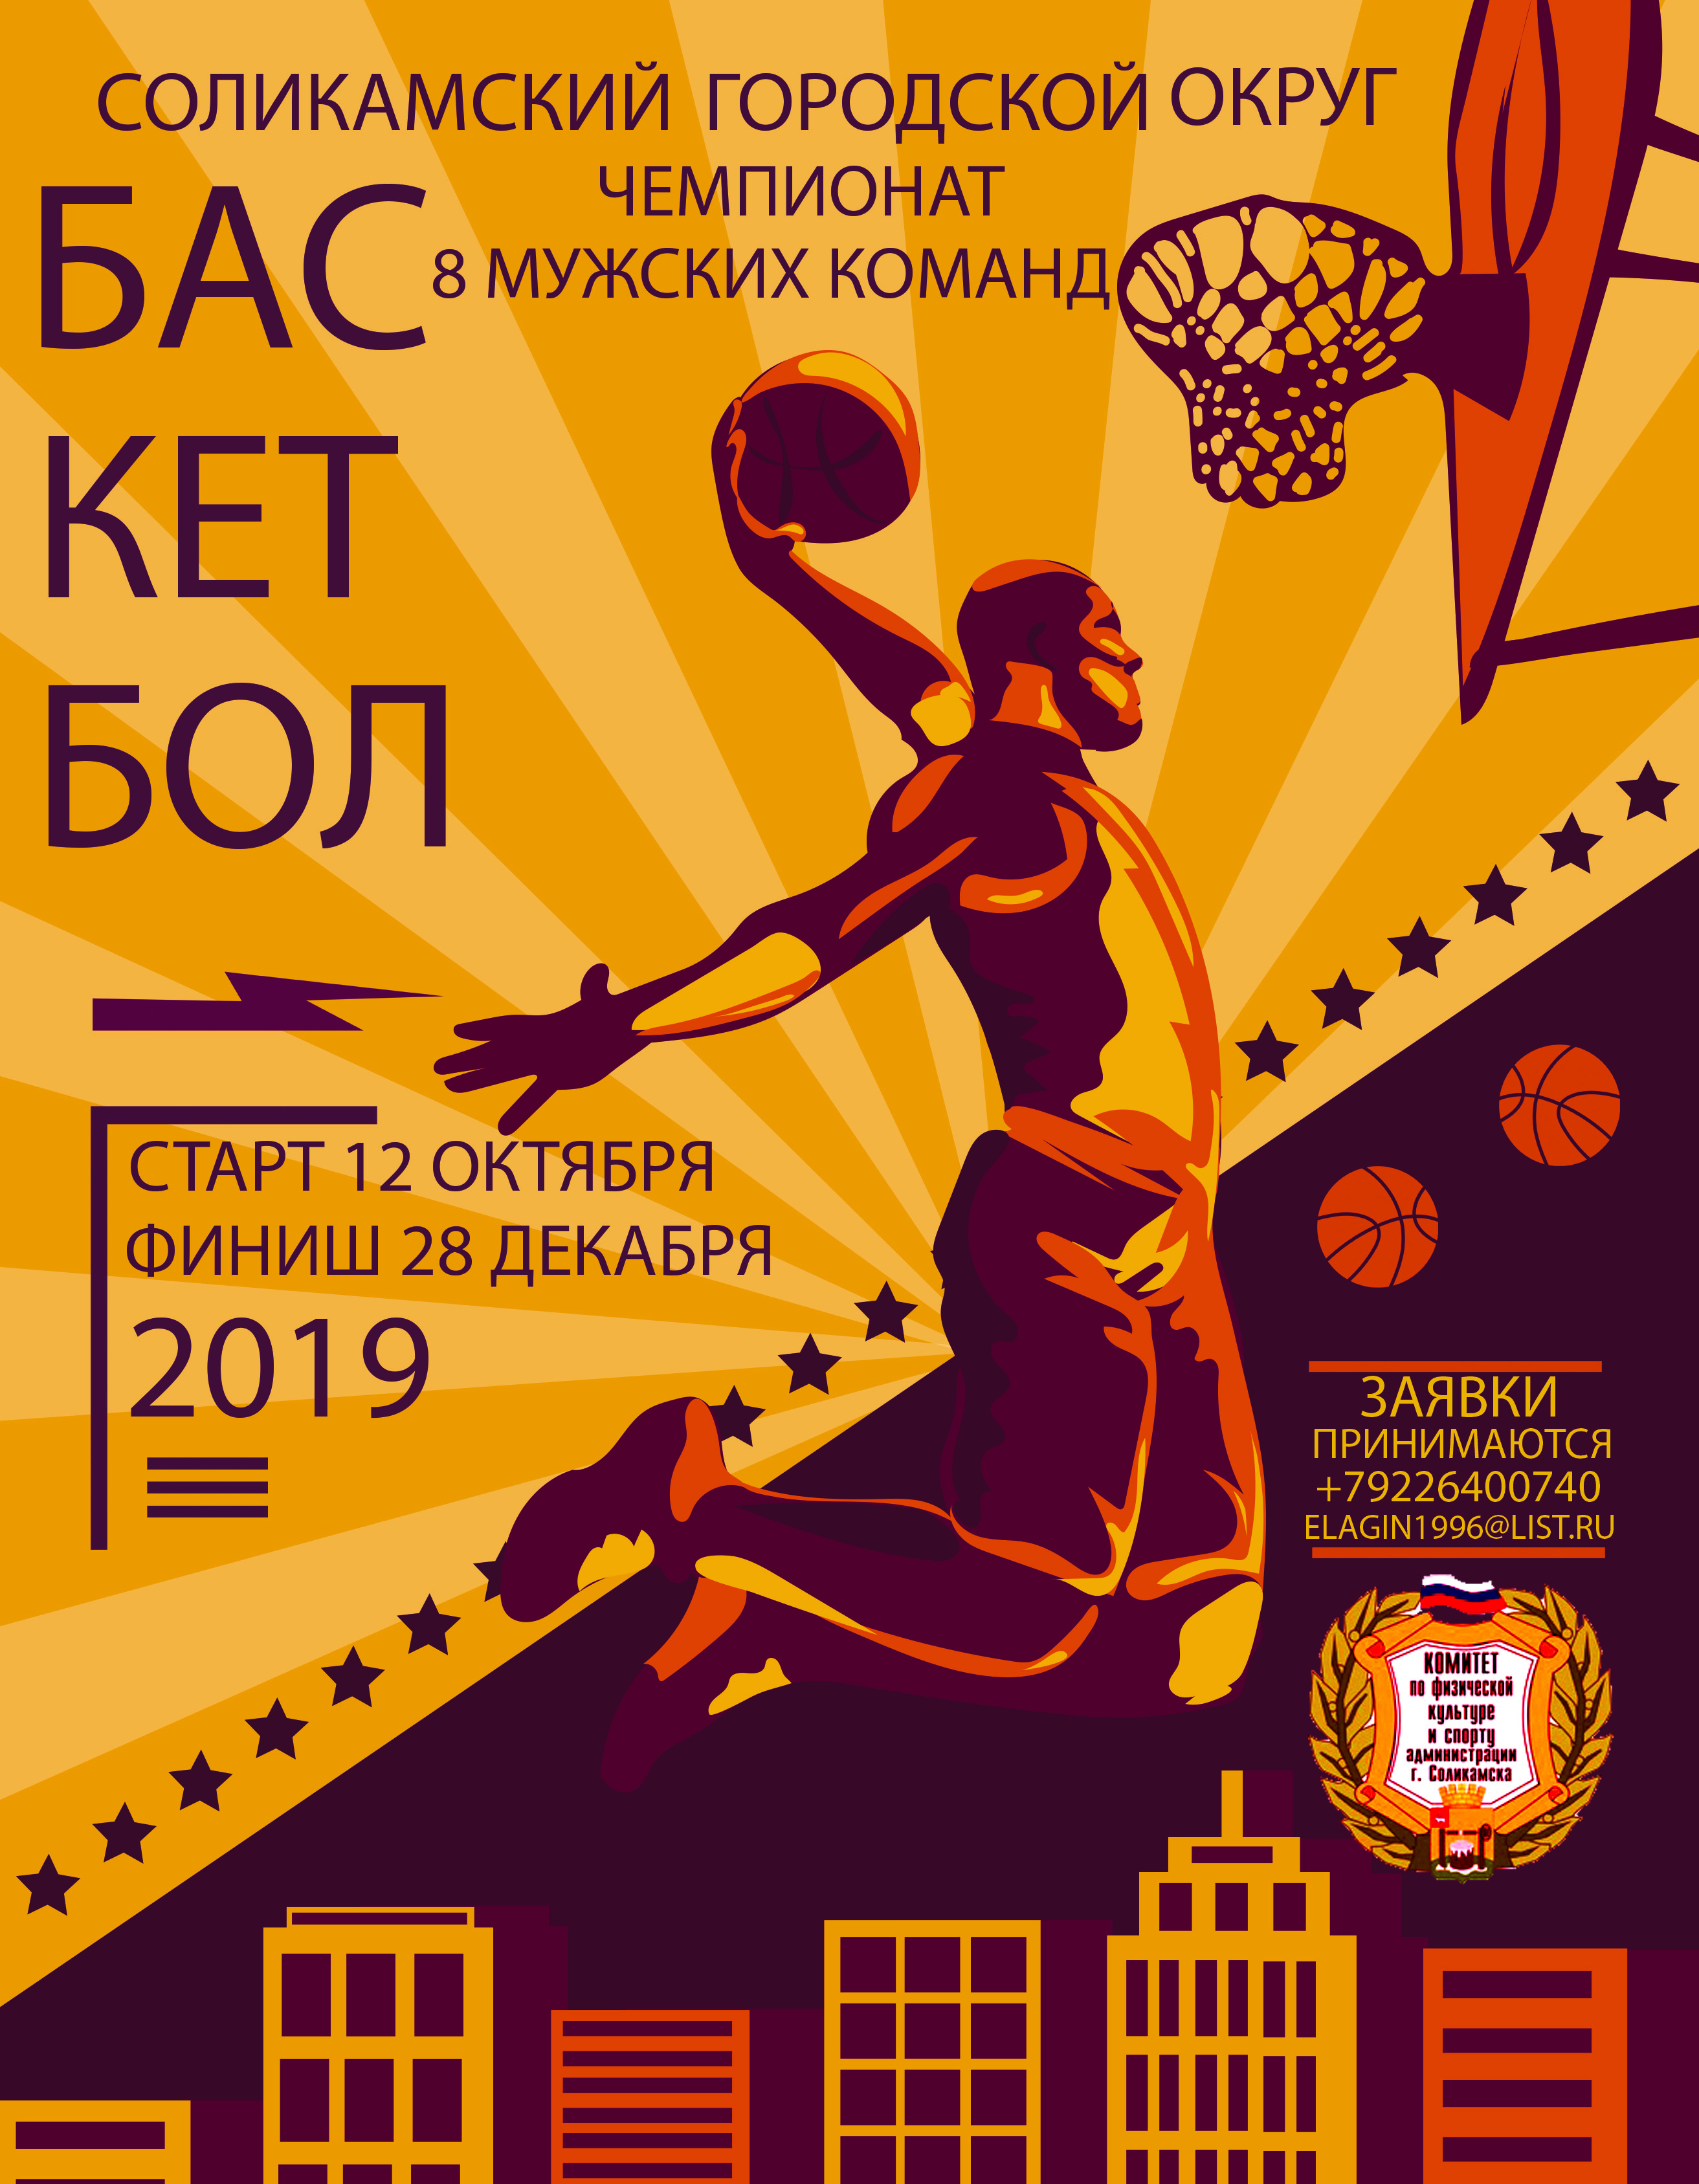 В период с 12 октября 2019 по 28 декабря 2019 года в Соликамском городском округе состоится Чемпионат по баскетболу